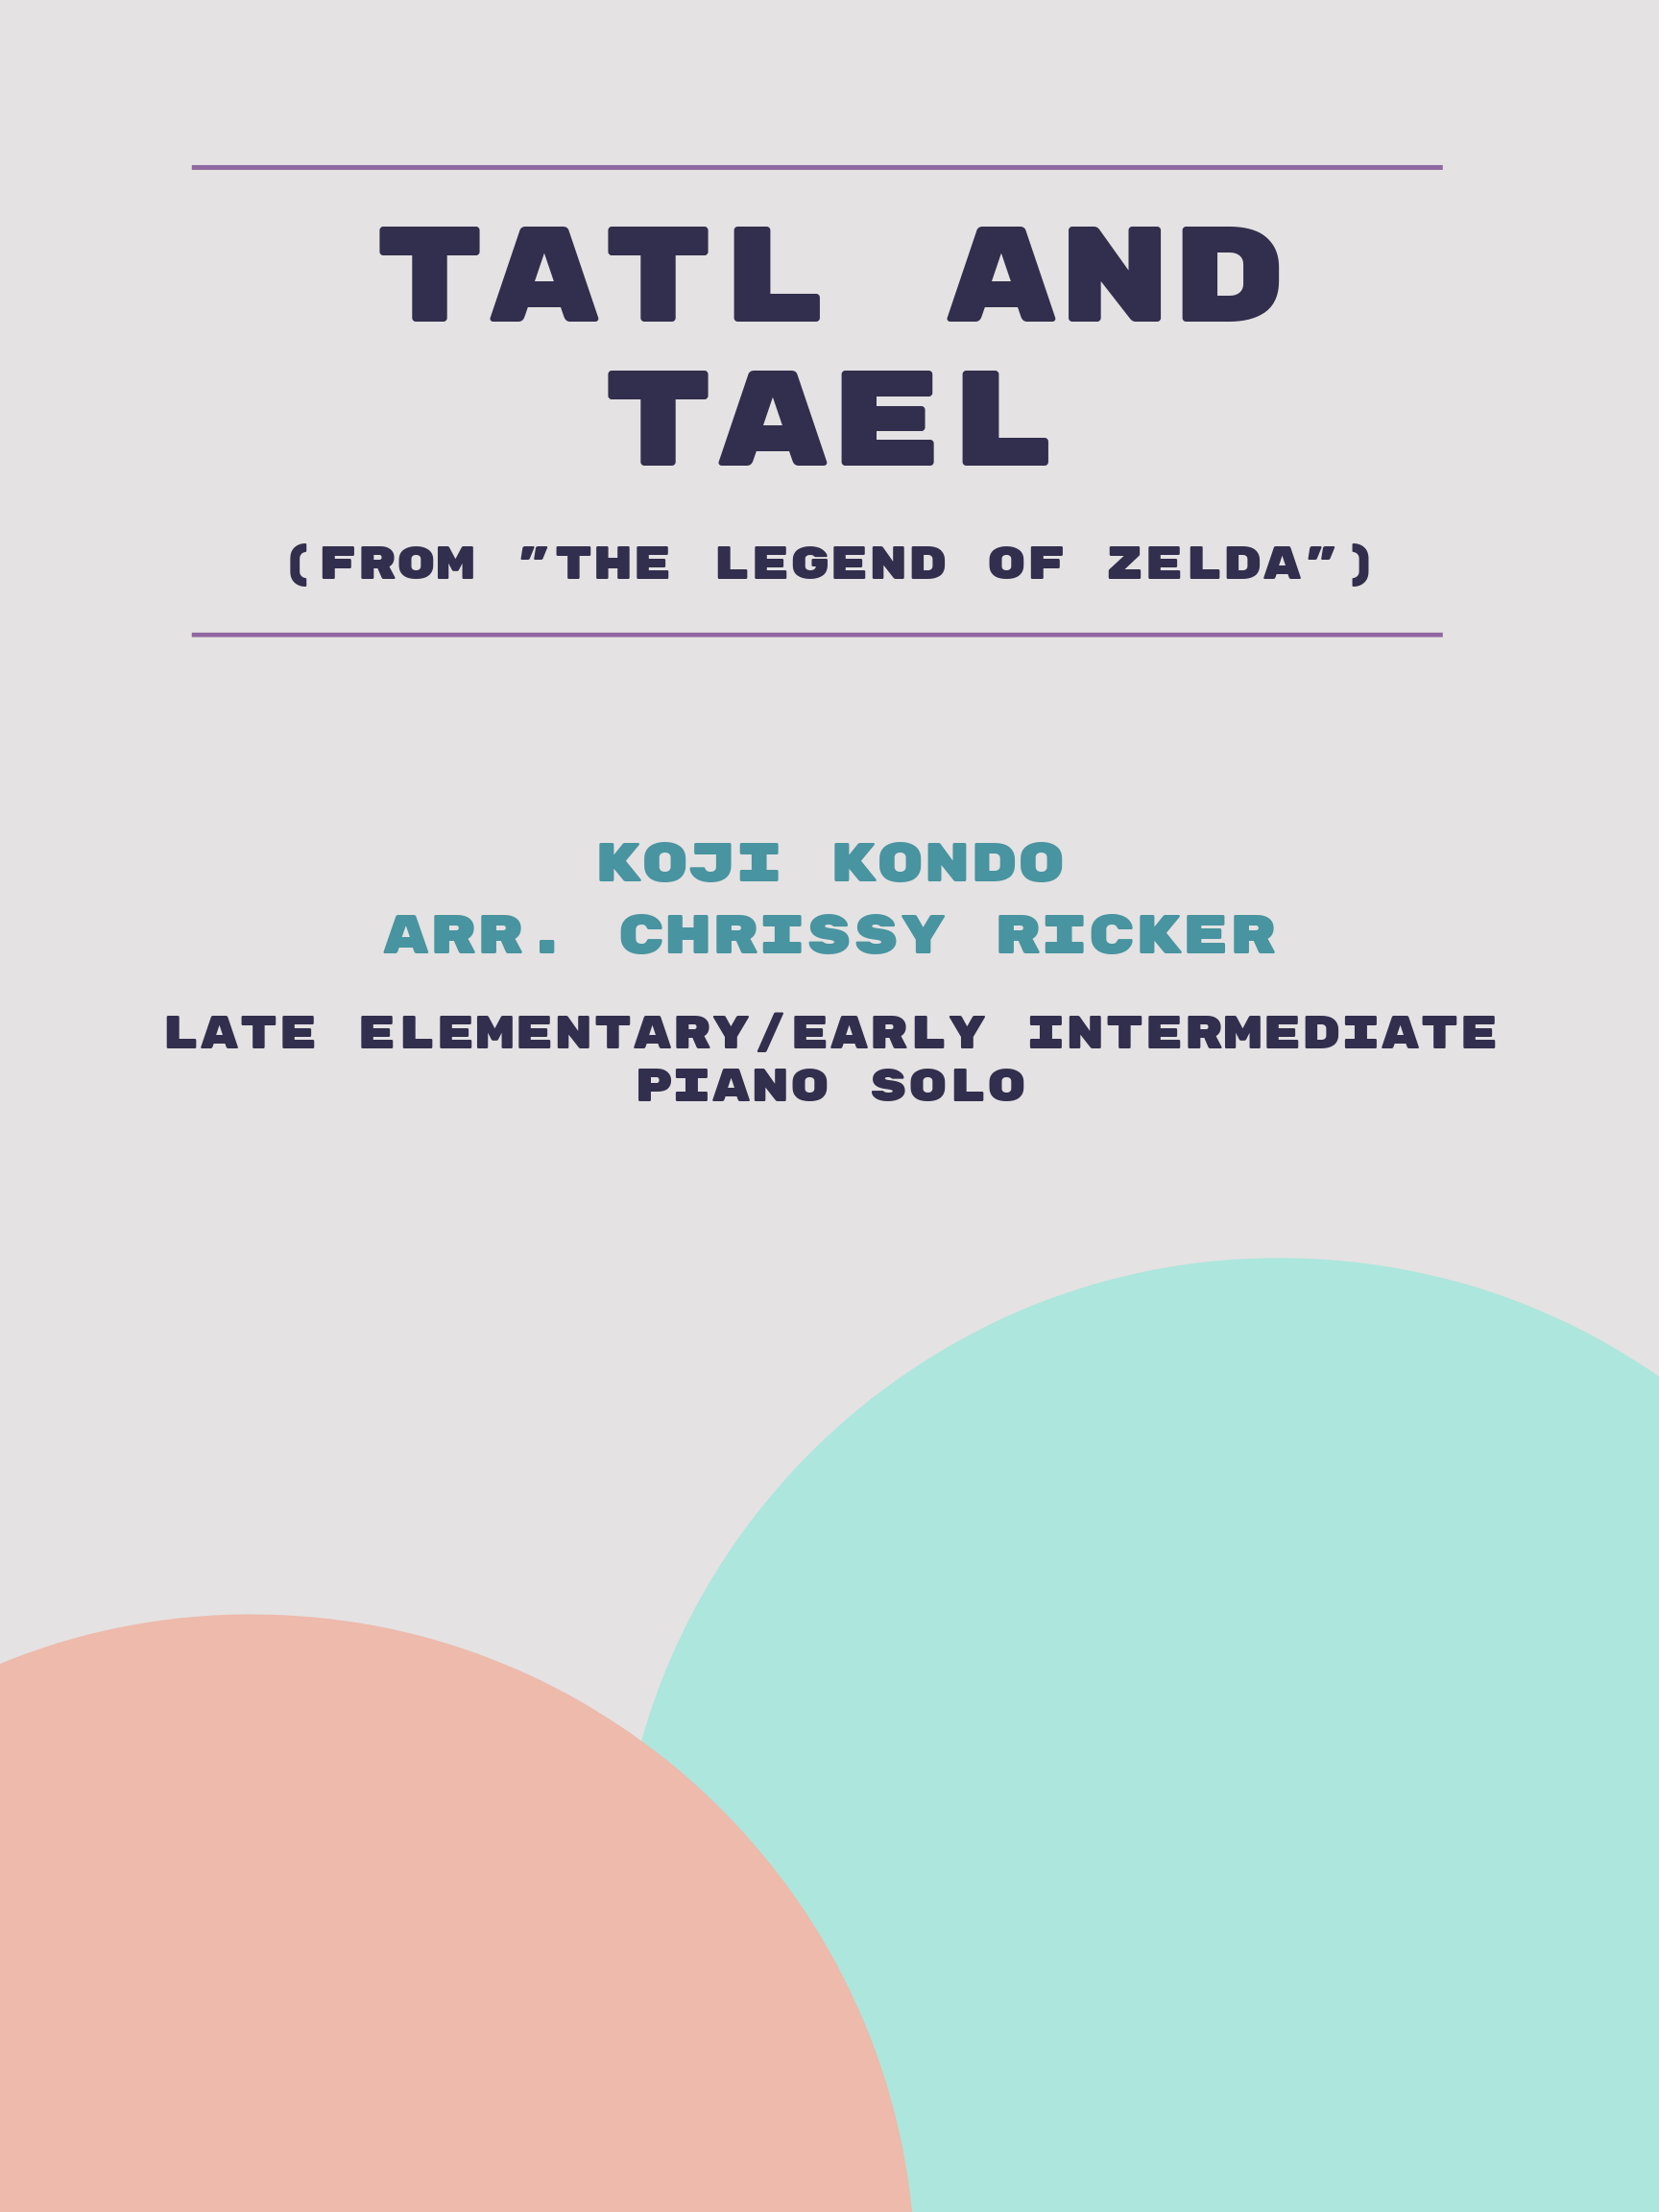 Tatl and Tael by Koji Kondo